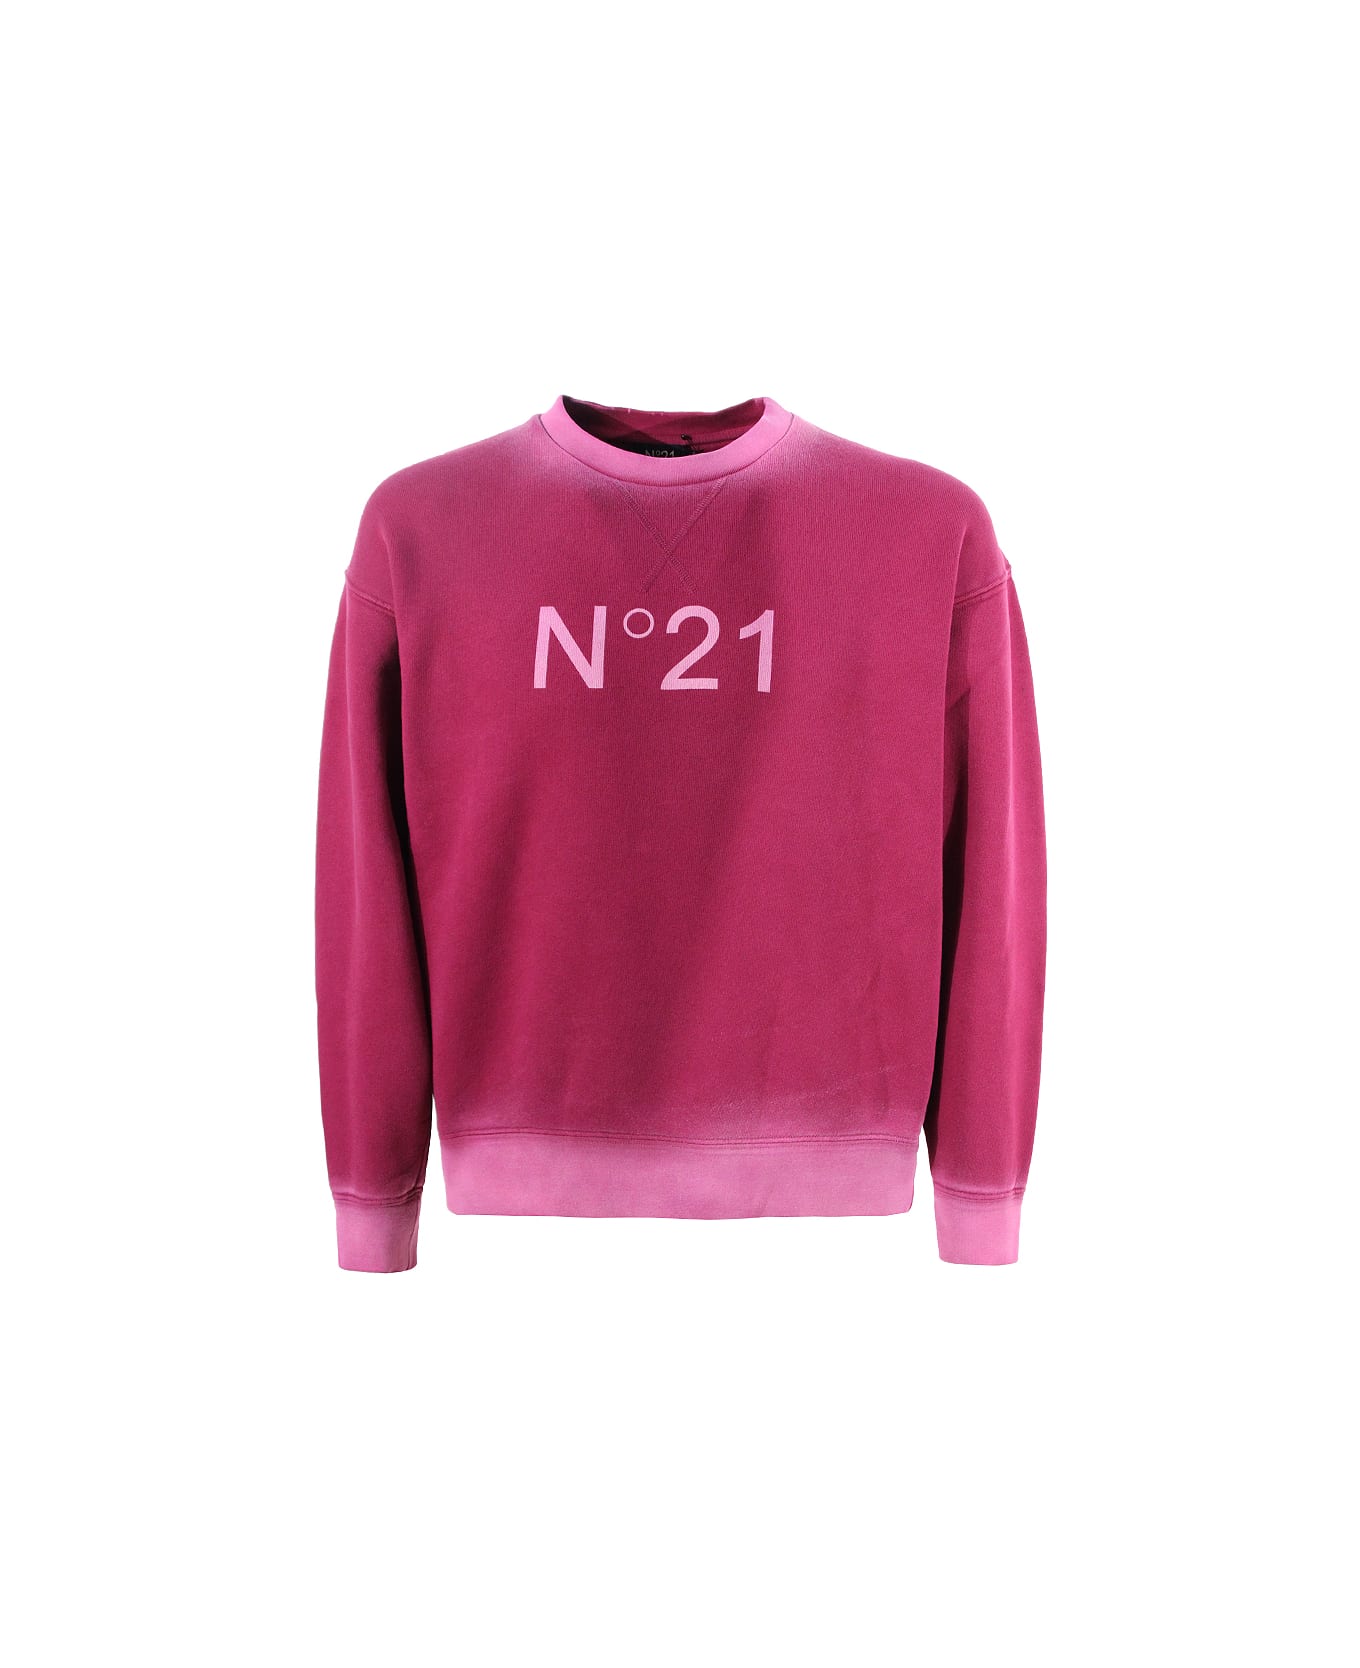 N.21 Sweatshirt N°21 - Black Cherry